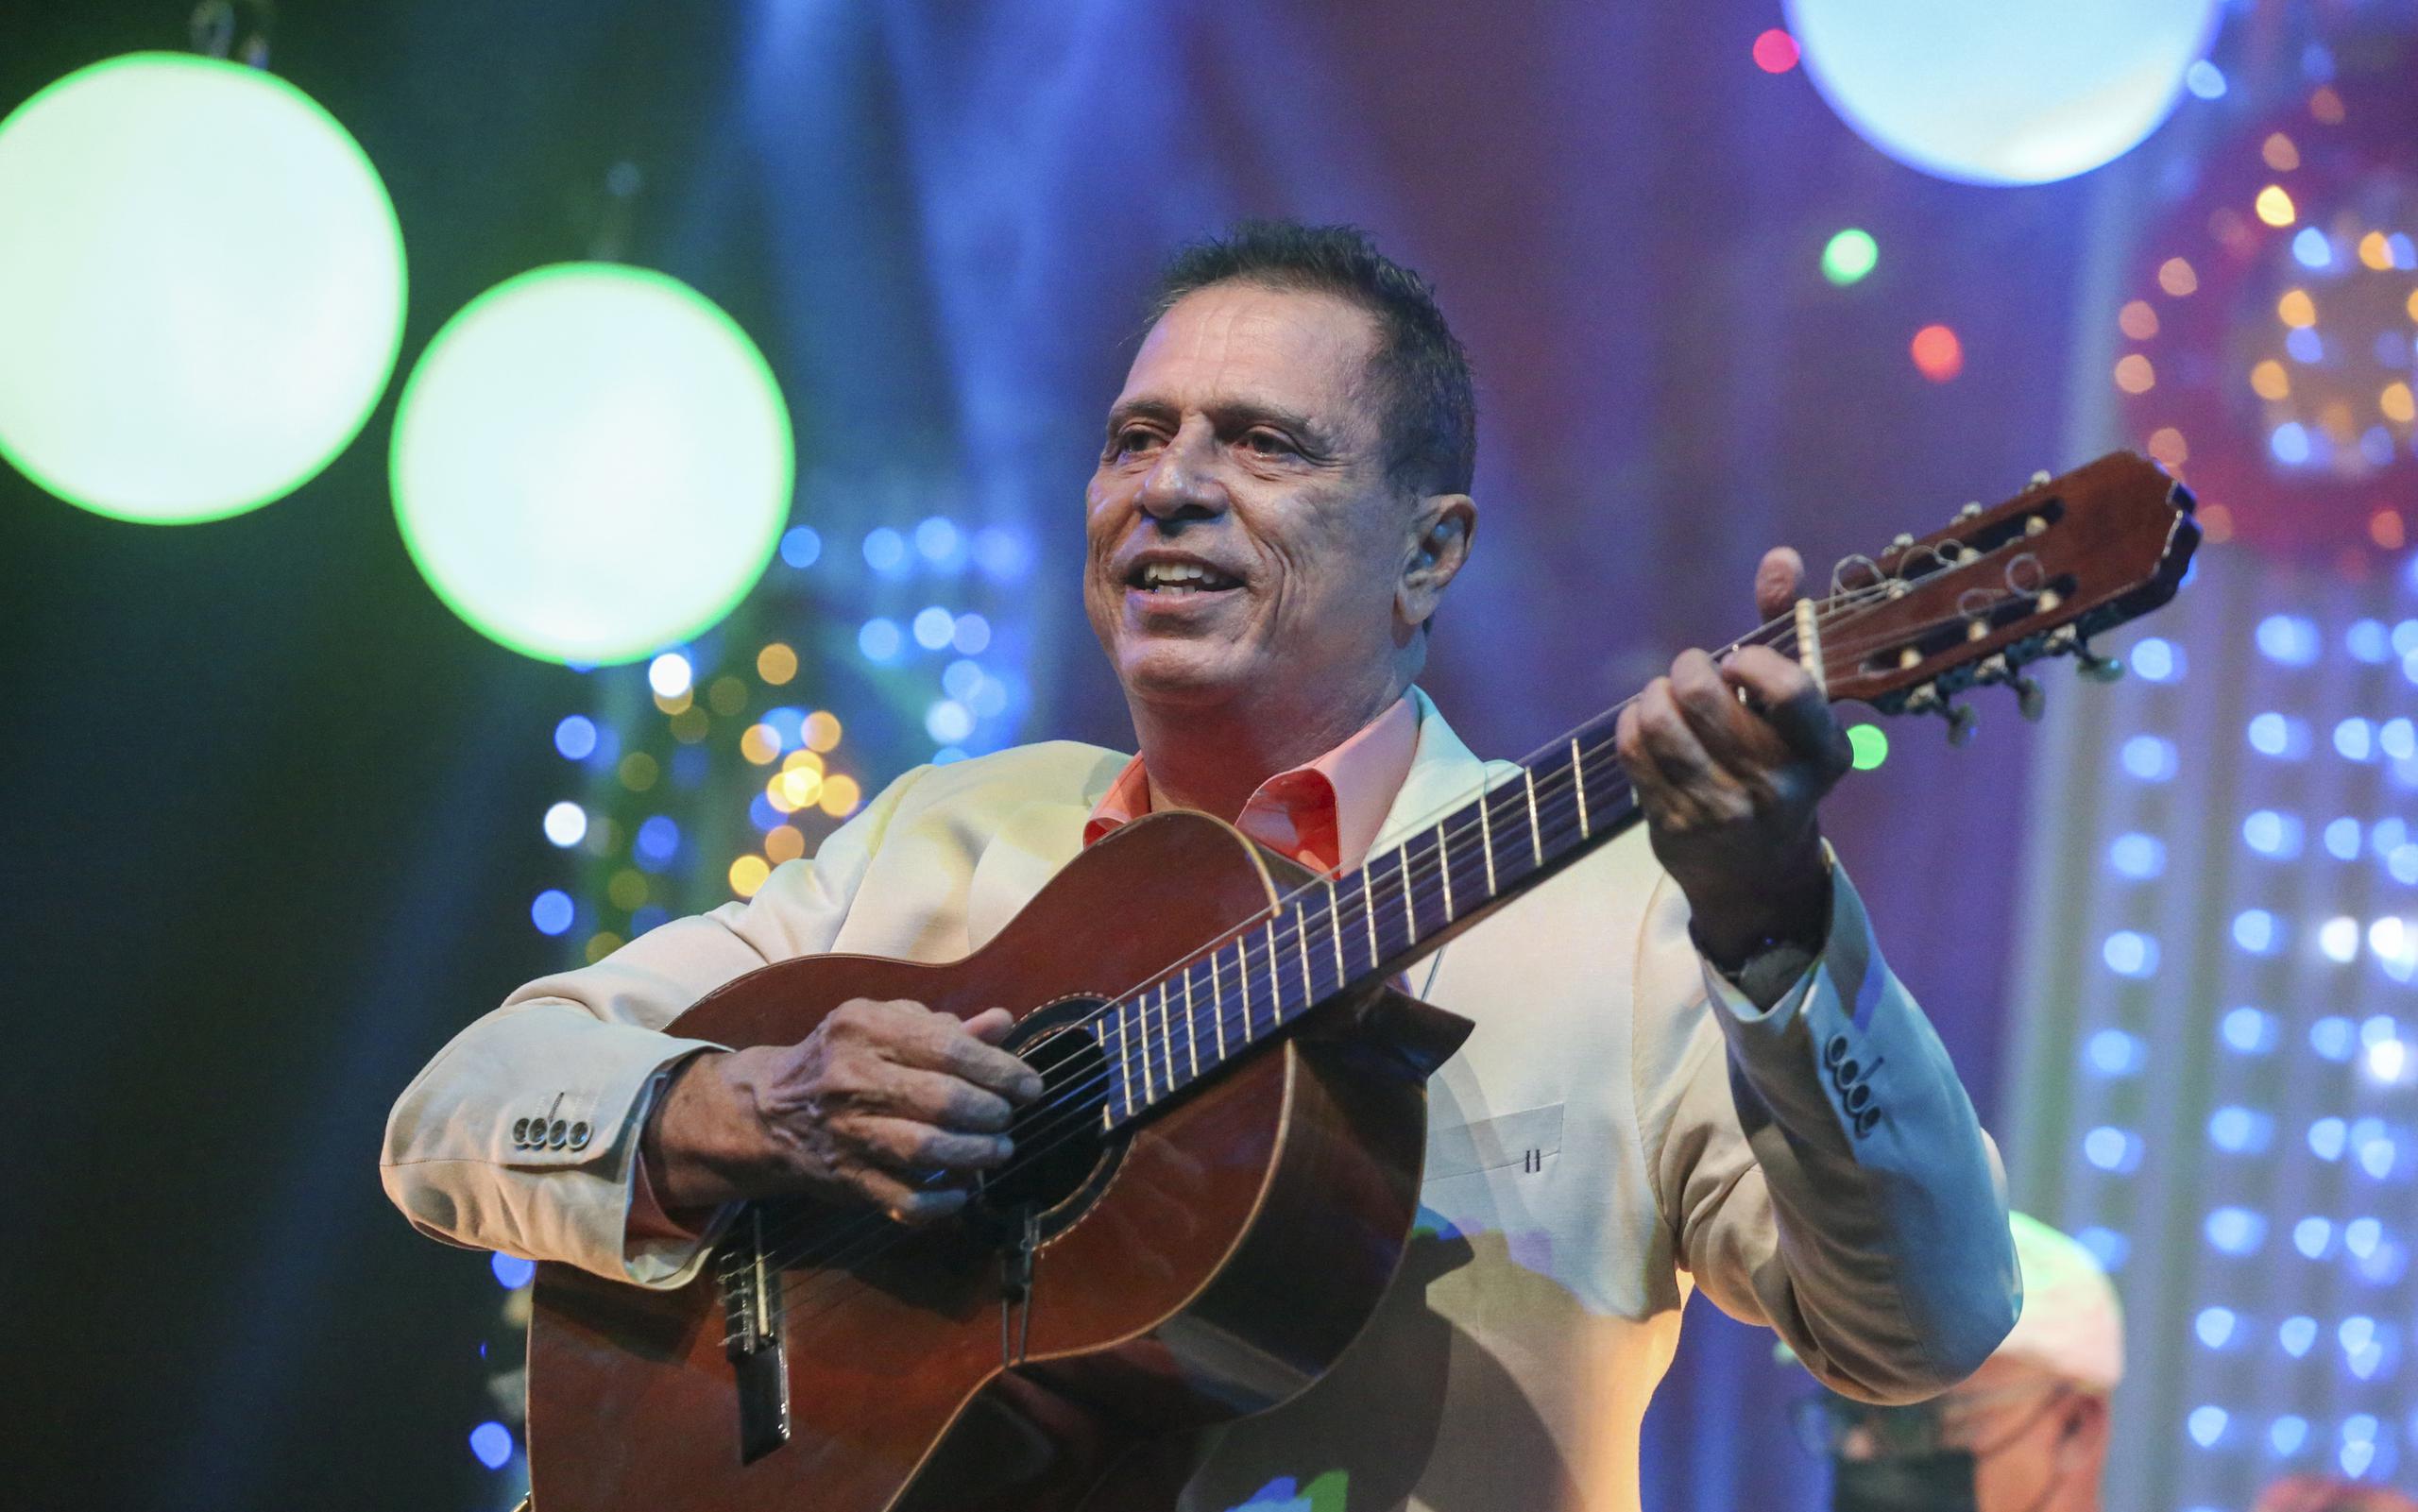 El folclorista participó del especial para televisión, grabado en el Teatro Braulio Castillo, que apoya el álbum.